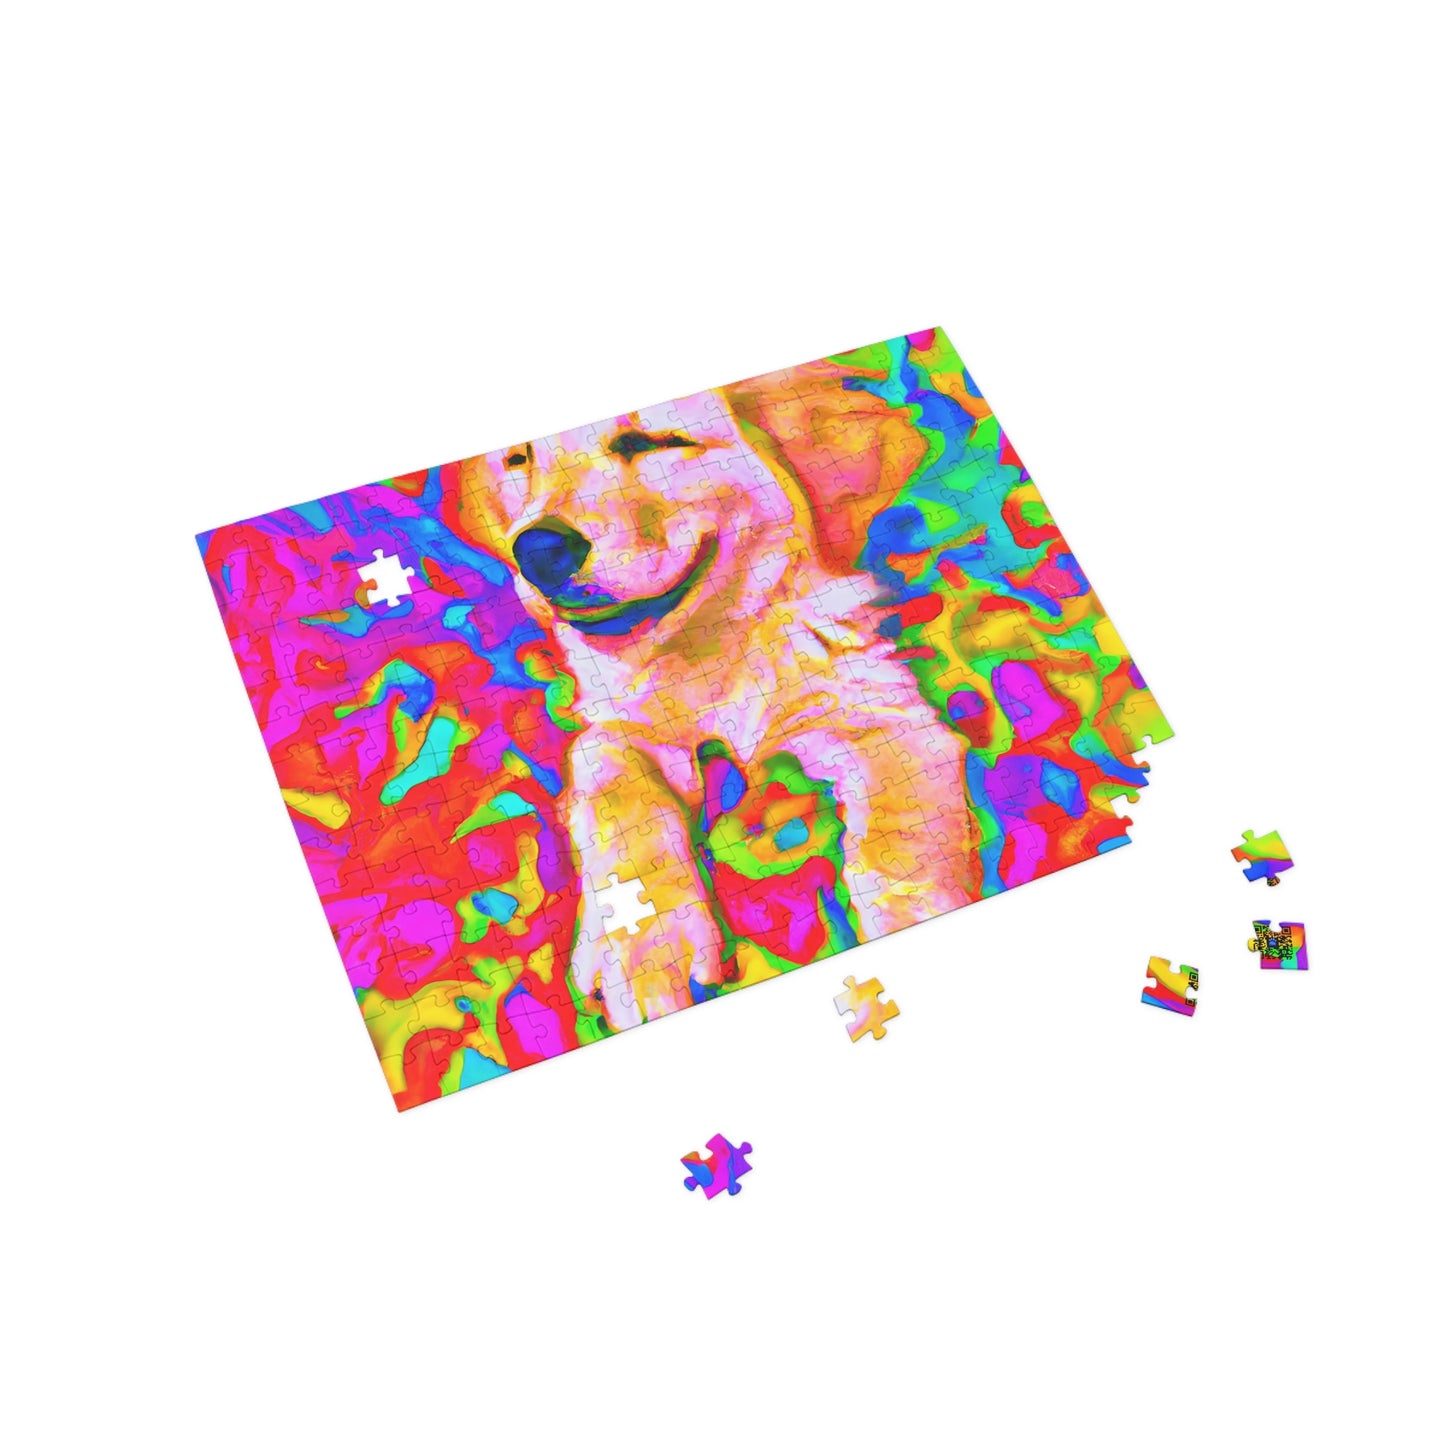 Adèle Enigmateur - Golden Retriever Puppy - Puzzle